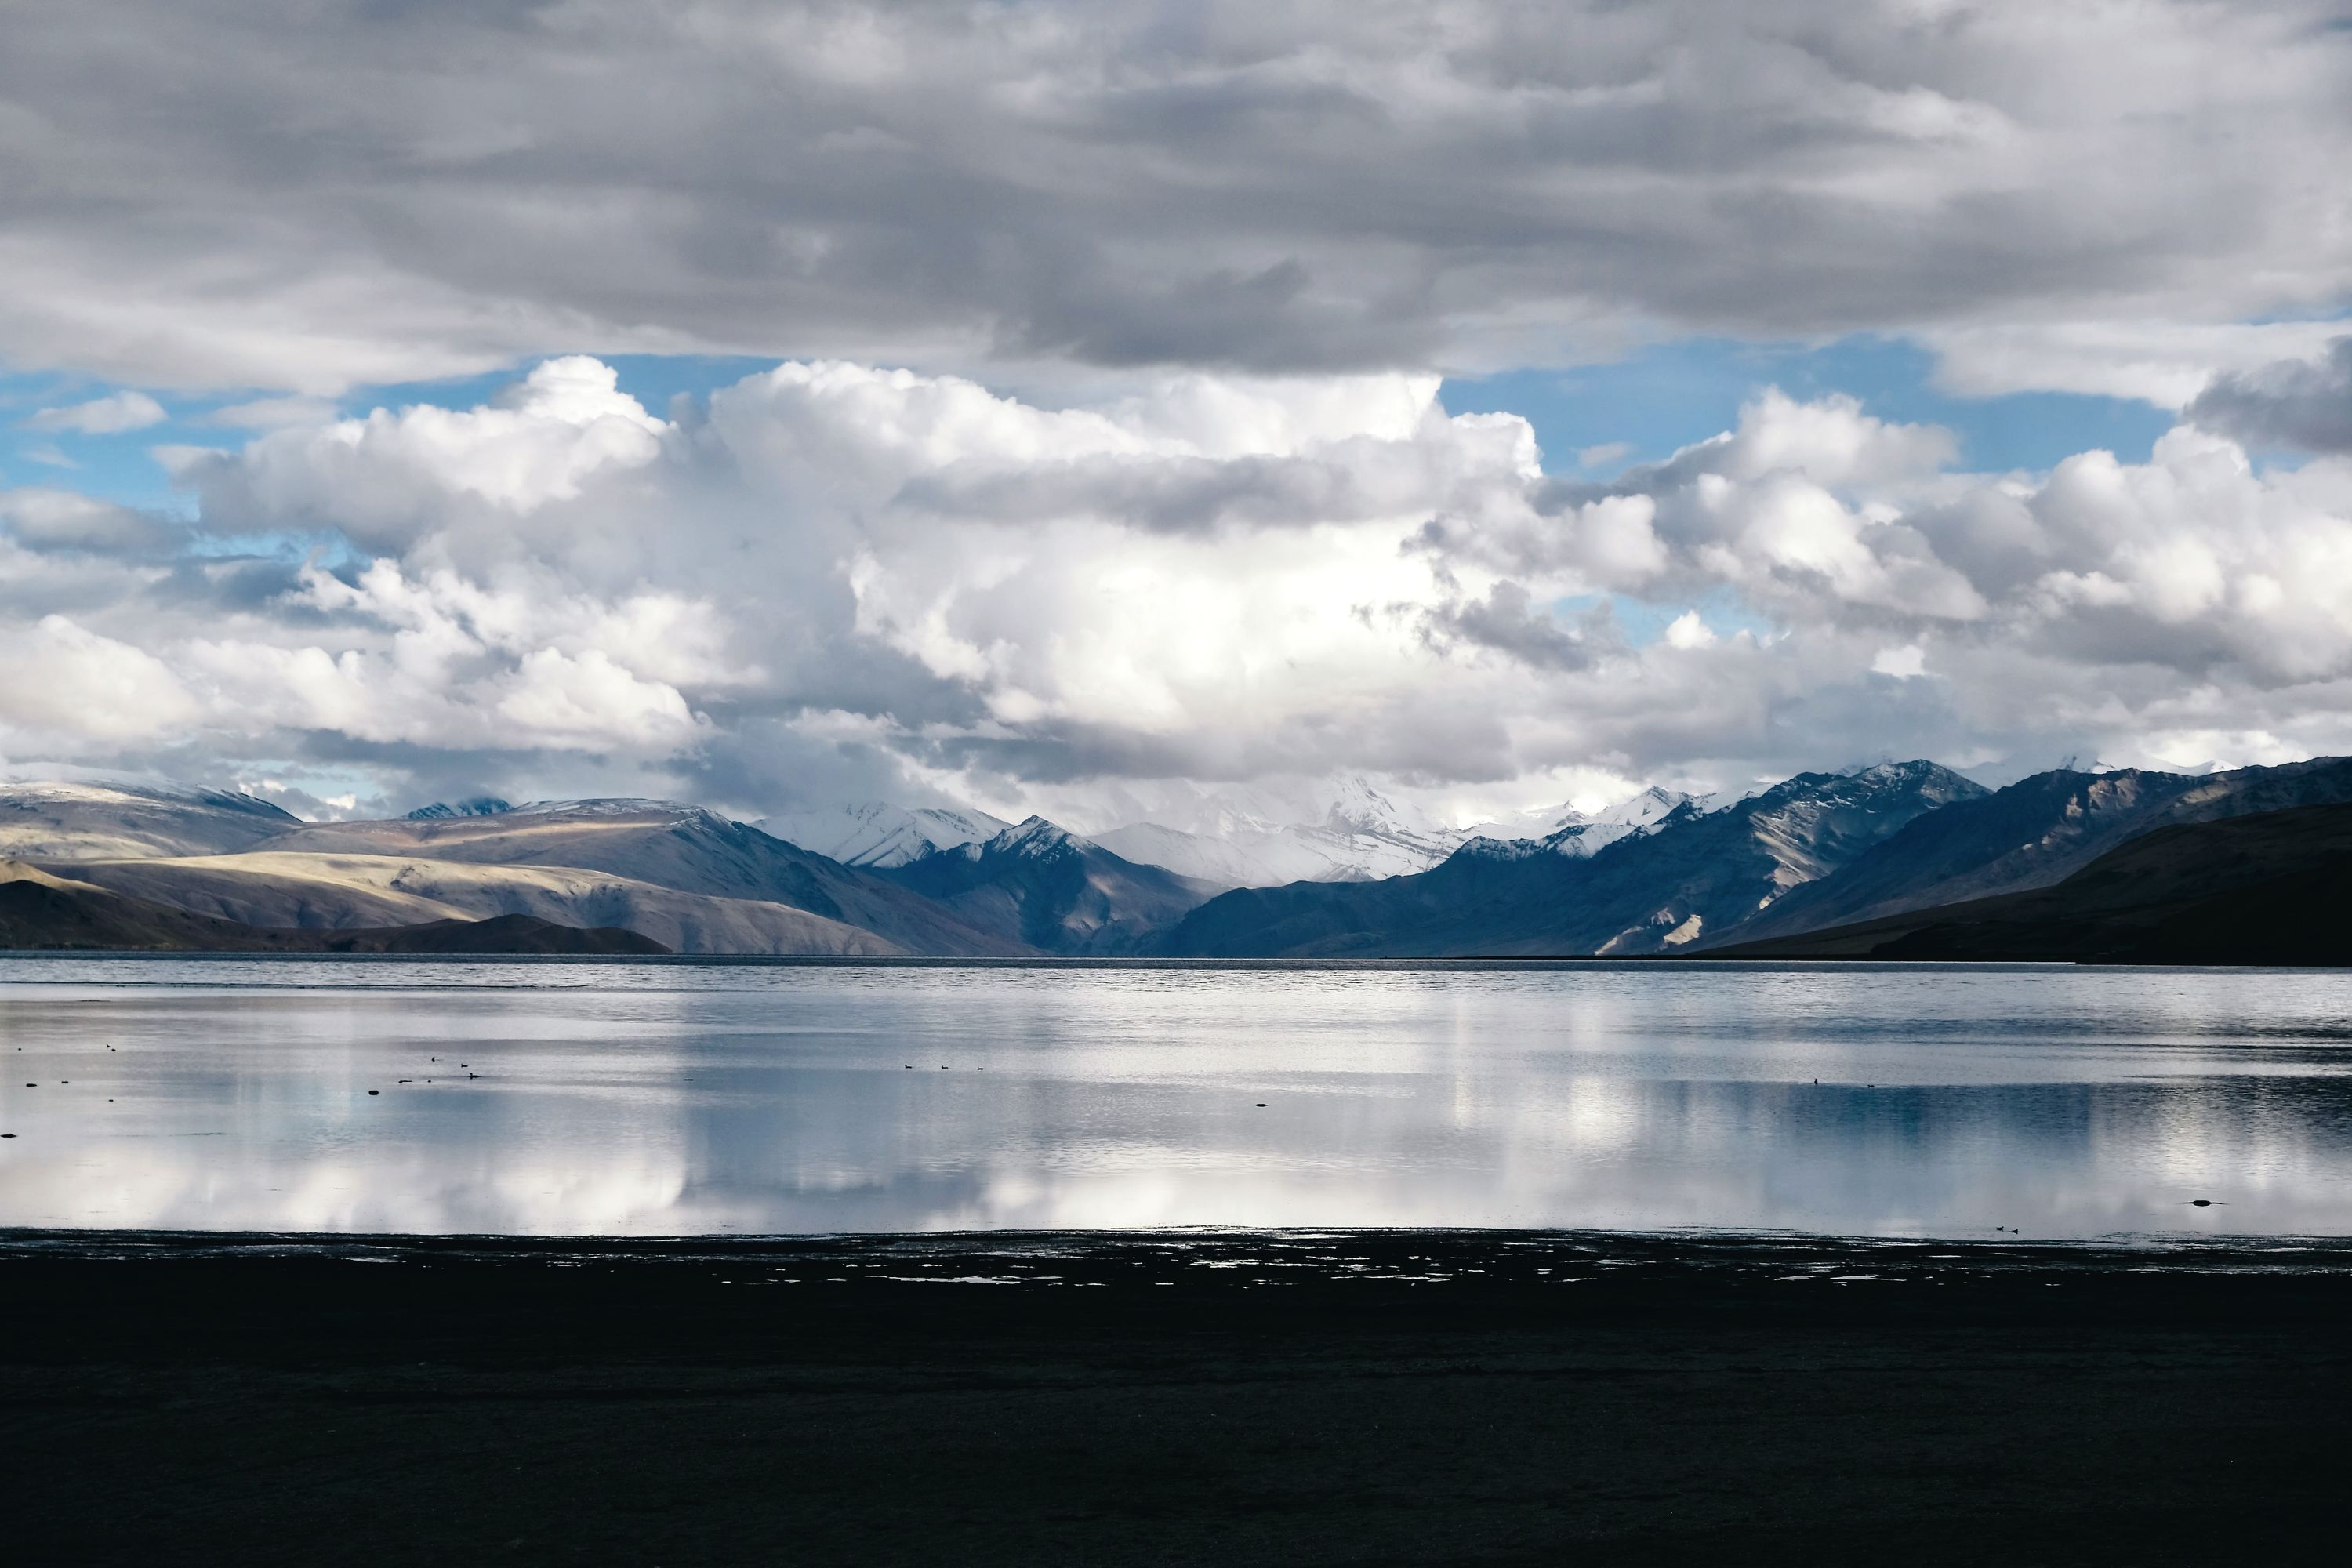 Tso Moriri lake, Ladakh, India. September 2021.